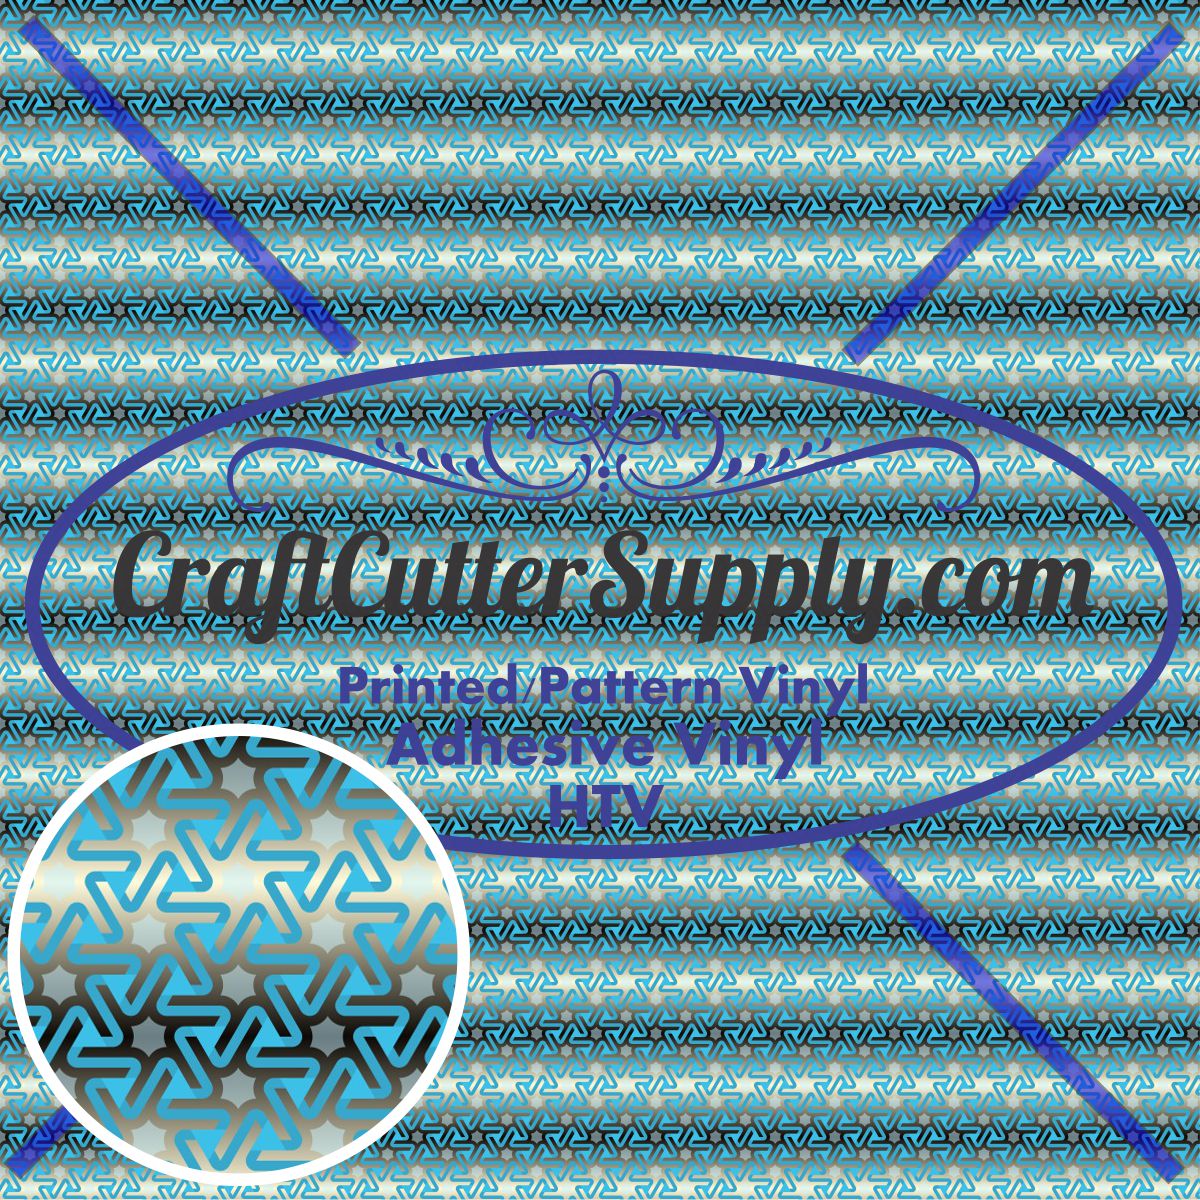 Pattern 31 12x12 - CraftCutterSupply.com